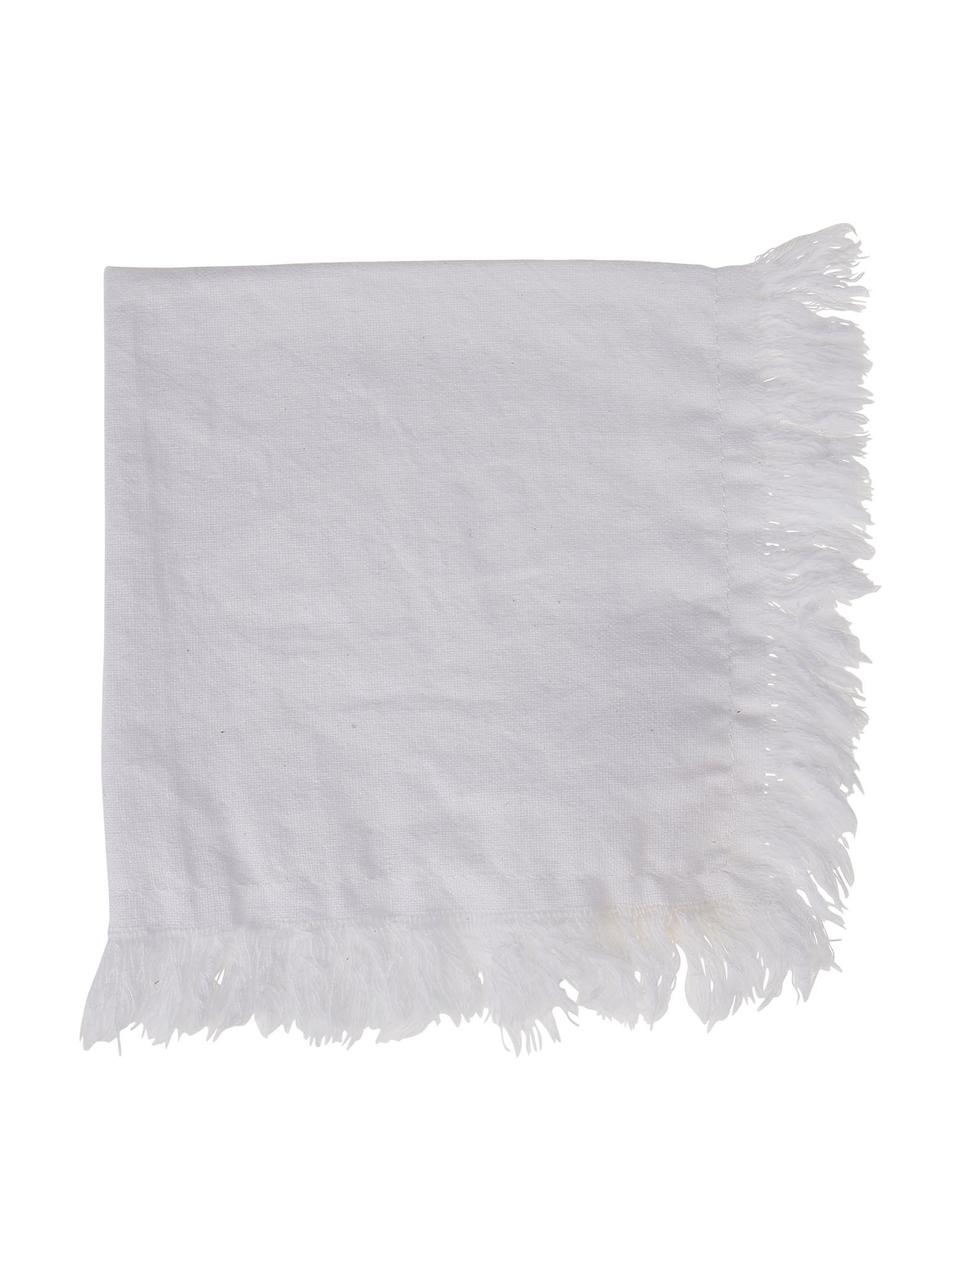 Baumwoll-Servietten Nalia in Weiß mit Fransen, 2 Stück, 100% Baumwolle, Weiß, B 35 x L 35 cm